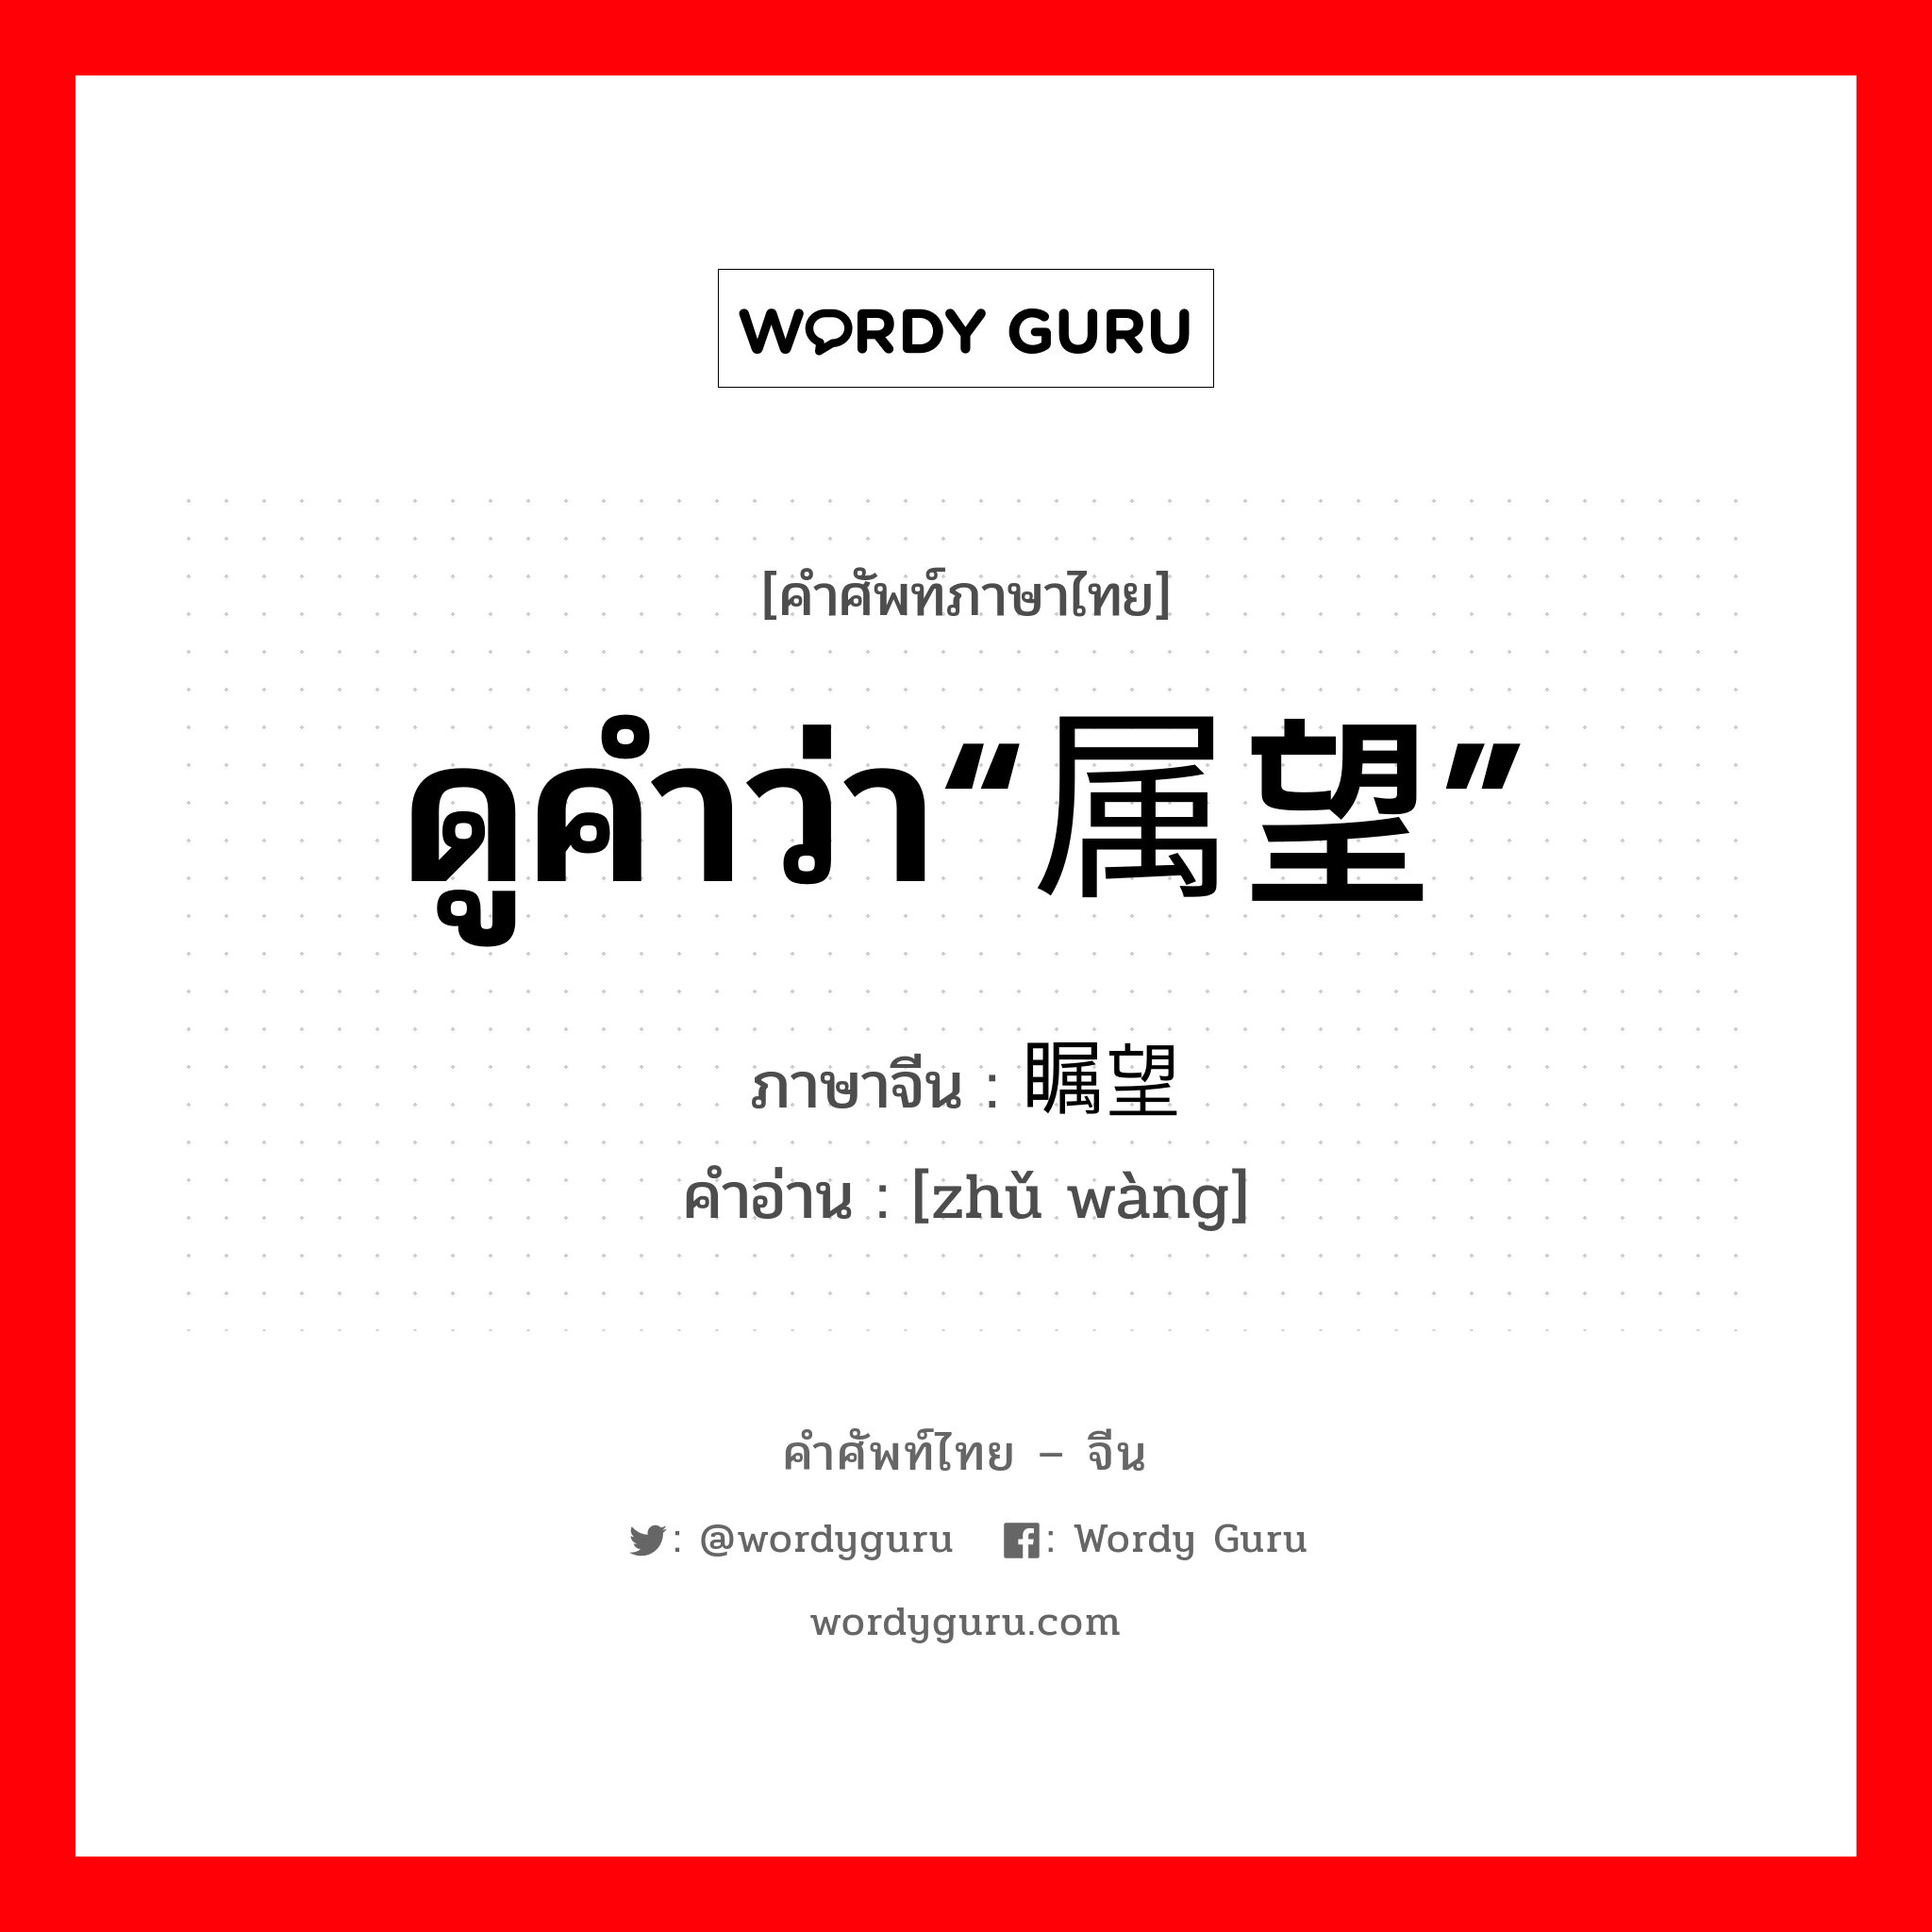 ดูคำว่า“属望” ภาษาจีนคืออะไร, คำศัพท์ภาษาไทย - จีน ดูคำว่า“属望” ภาษาจีน 瞩望 คำอ่าน [zhǔ wàng]